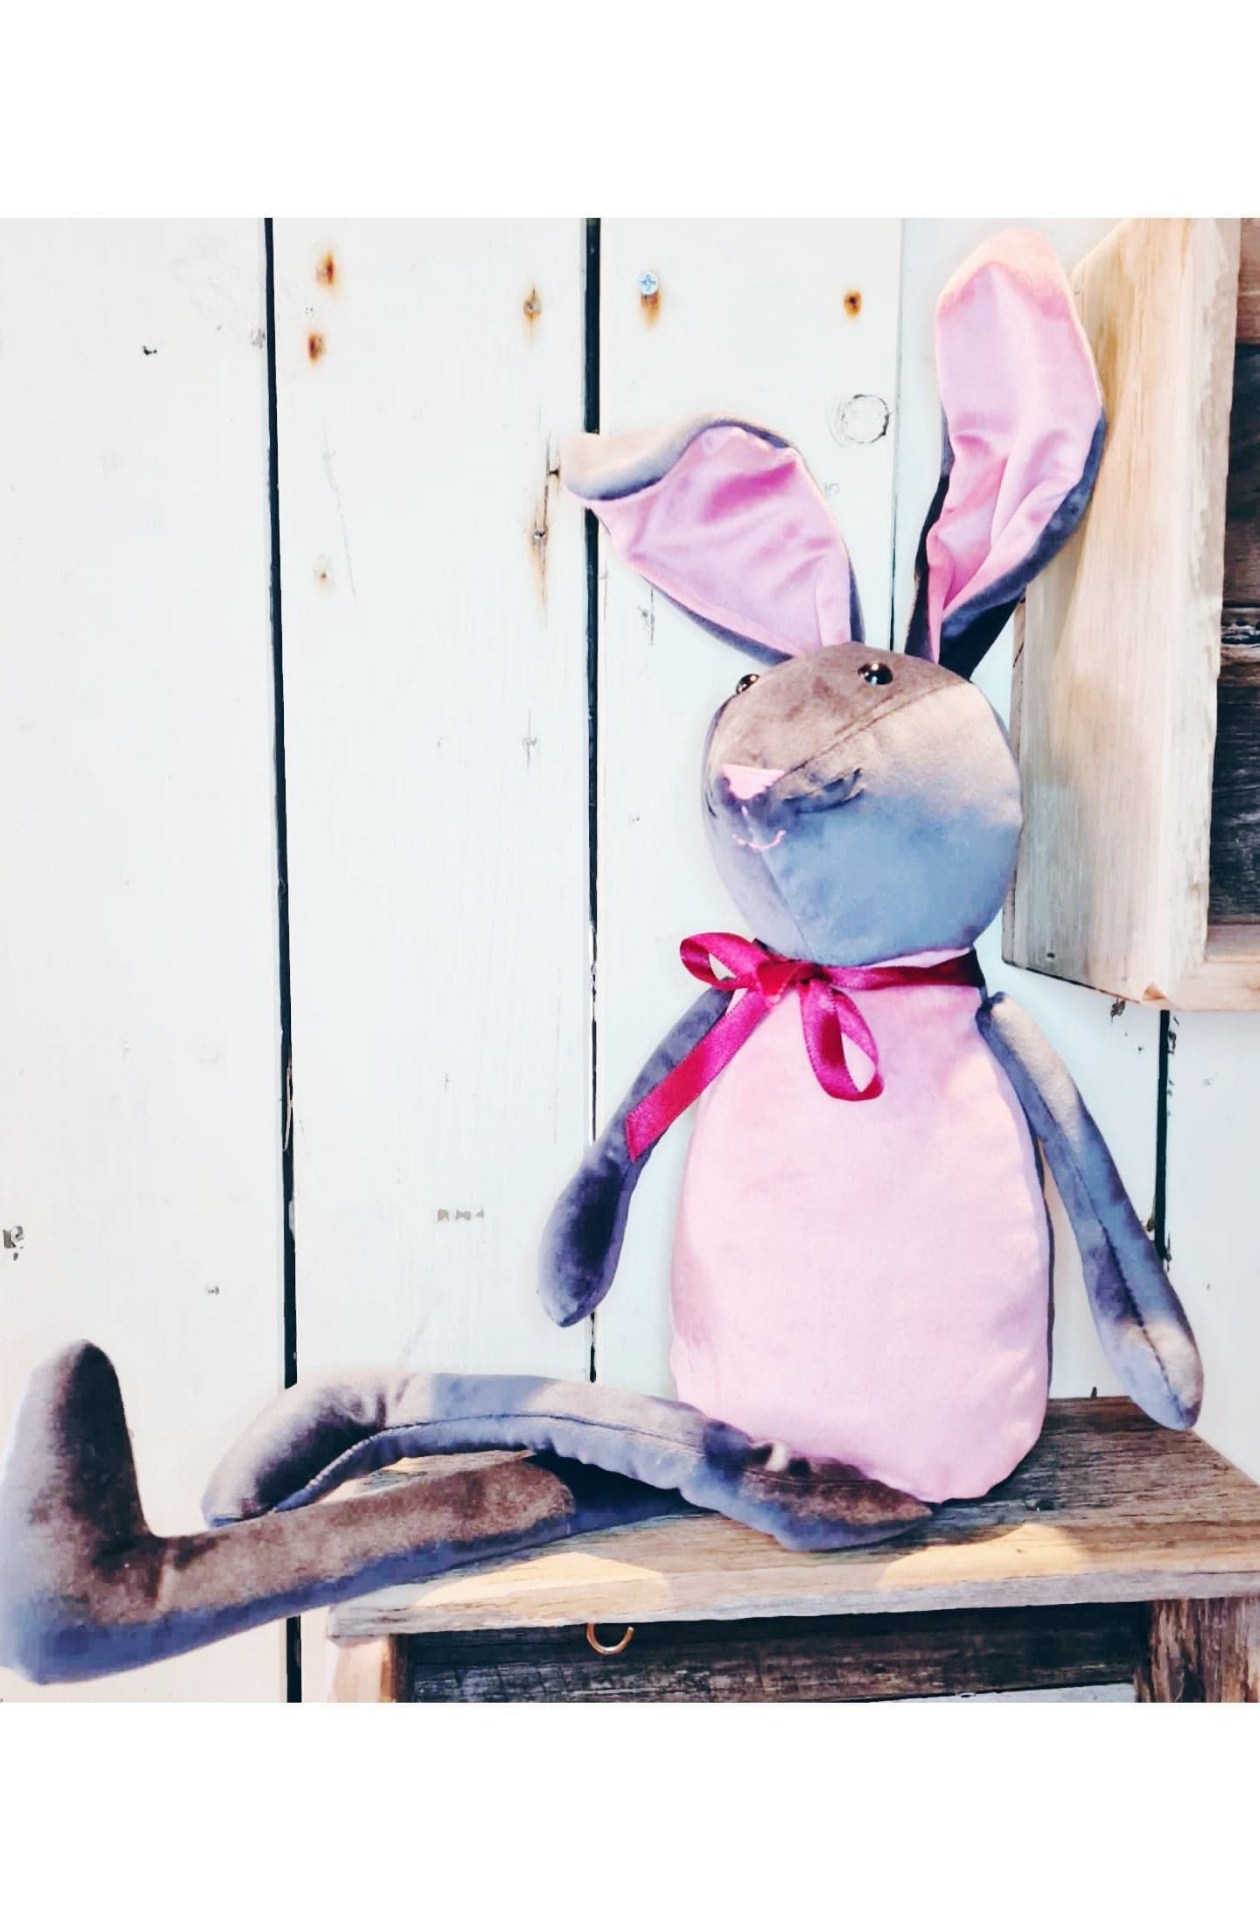 Harvey the Velvet Bunny. Handmade in The Dandenongs